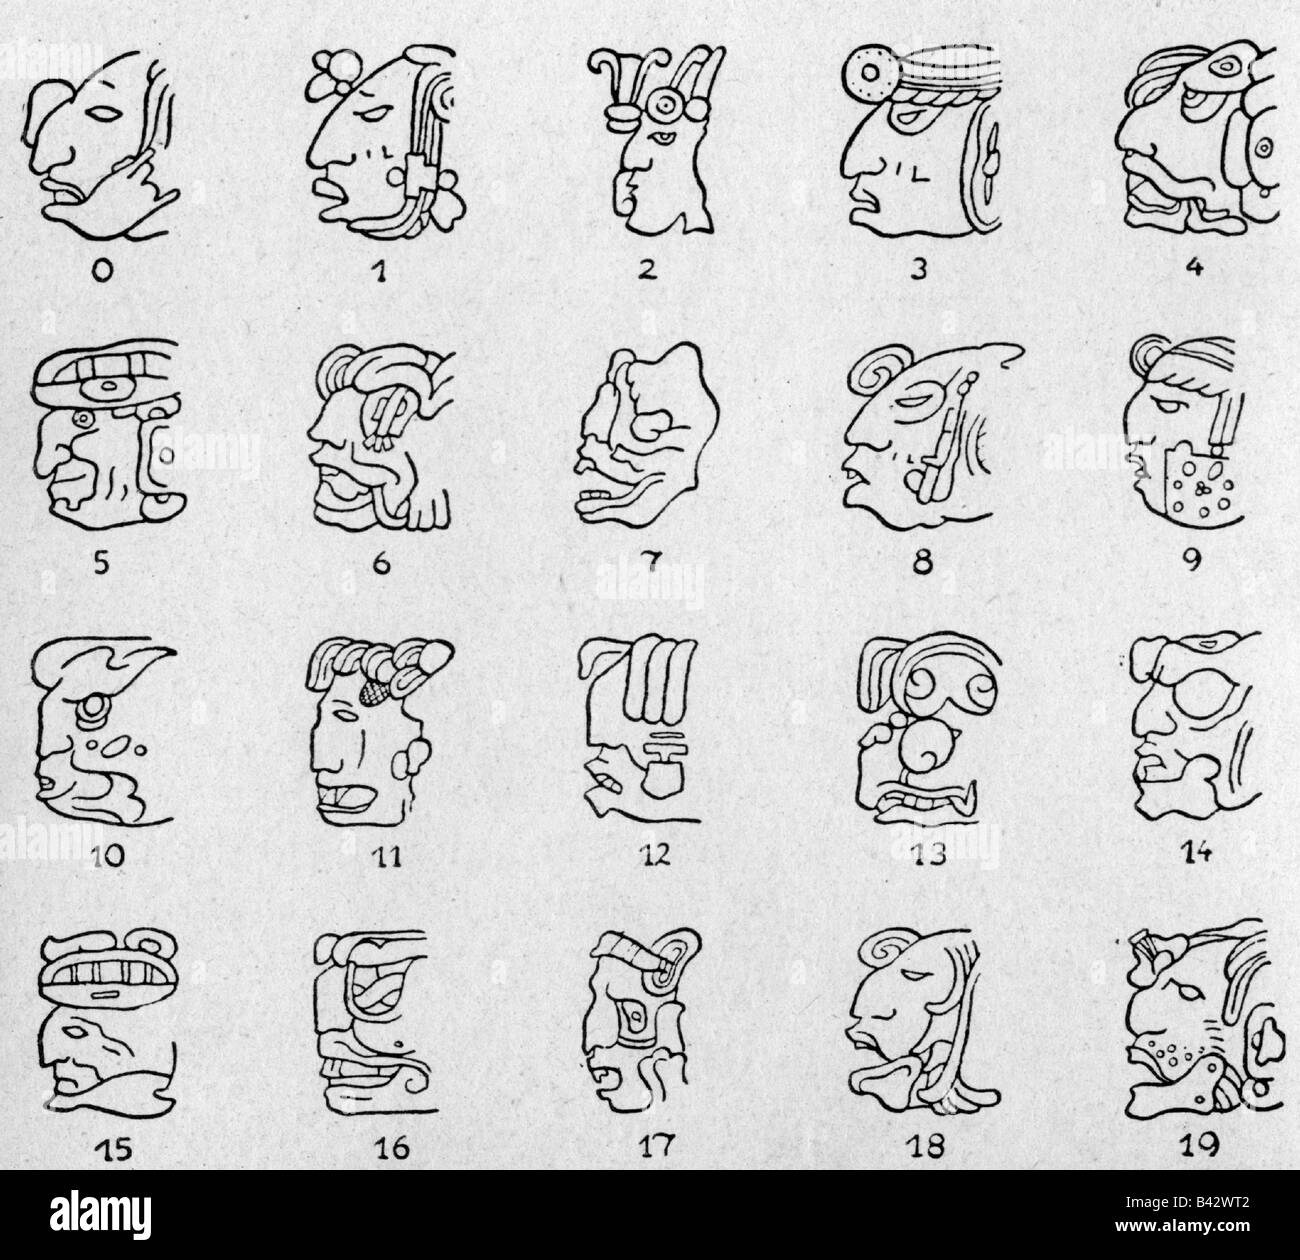 Écriture, caractères, hiéroglyphes maya, figures, 0 - 19, J.E. Thompson, « civilisation des Mayas », 1927, méso-américain, écriture, nombre, figure, Banque D'Images